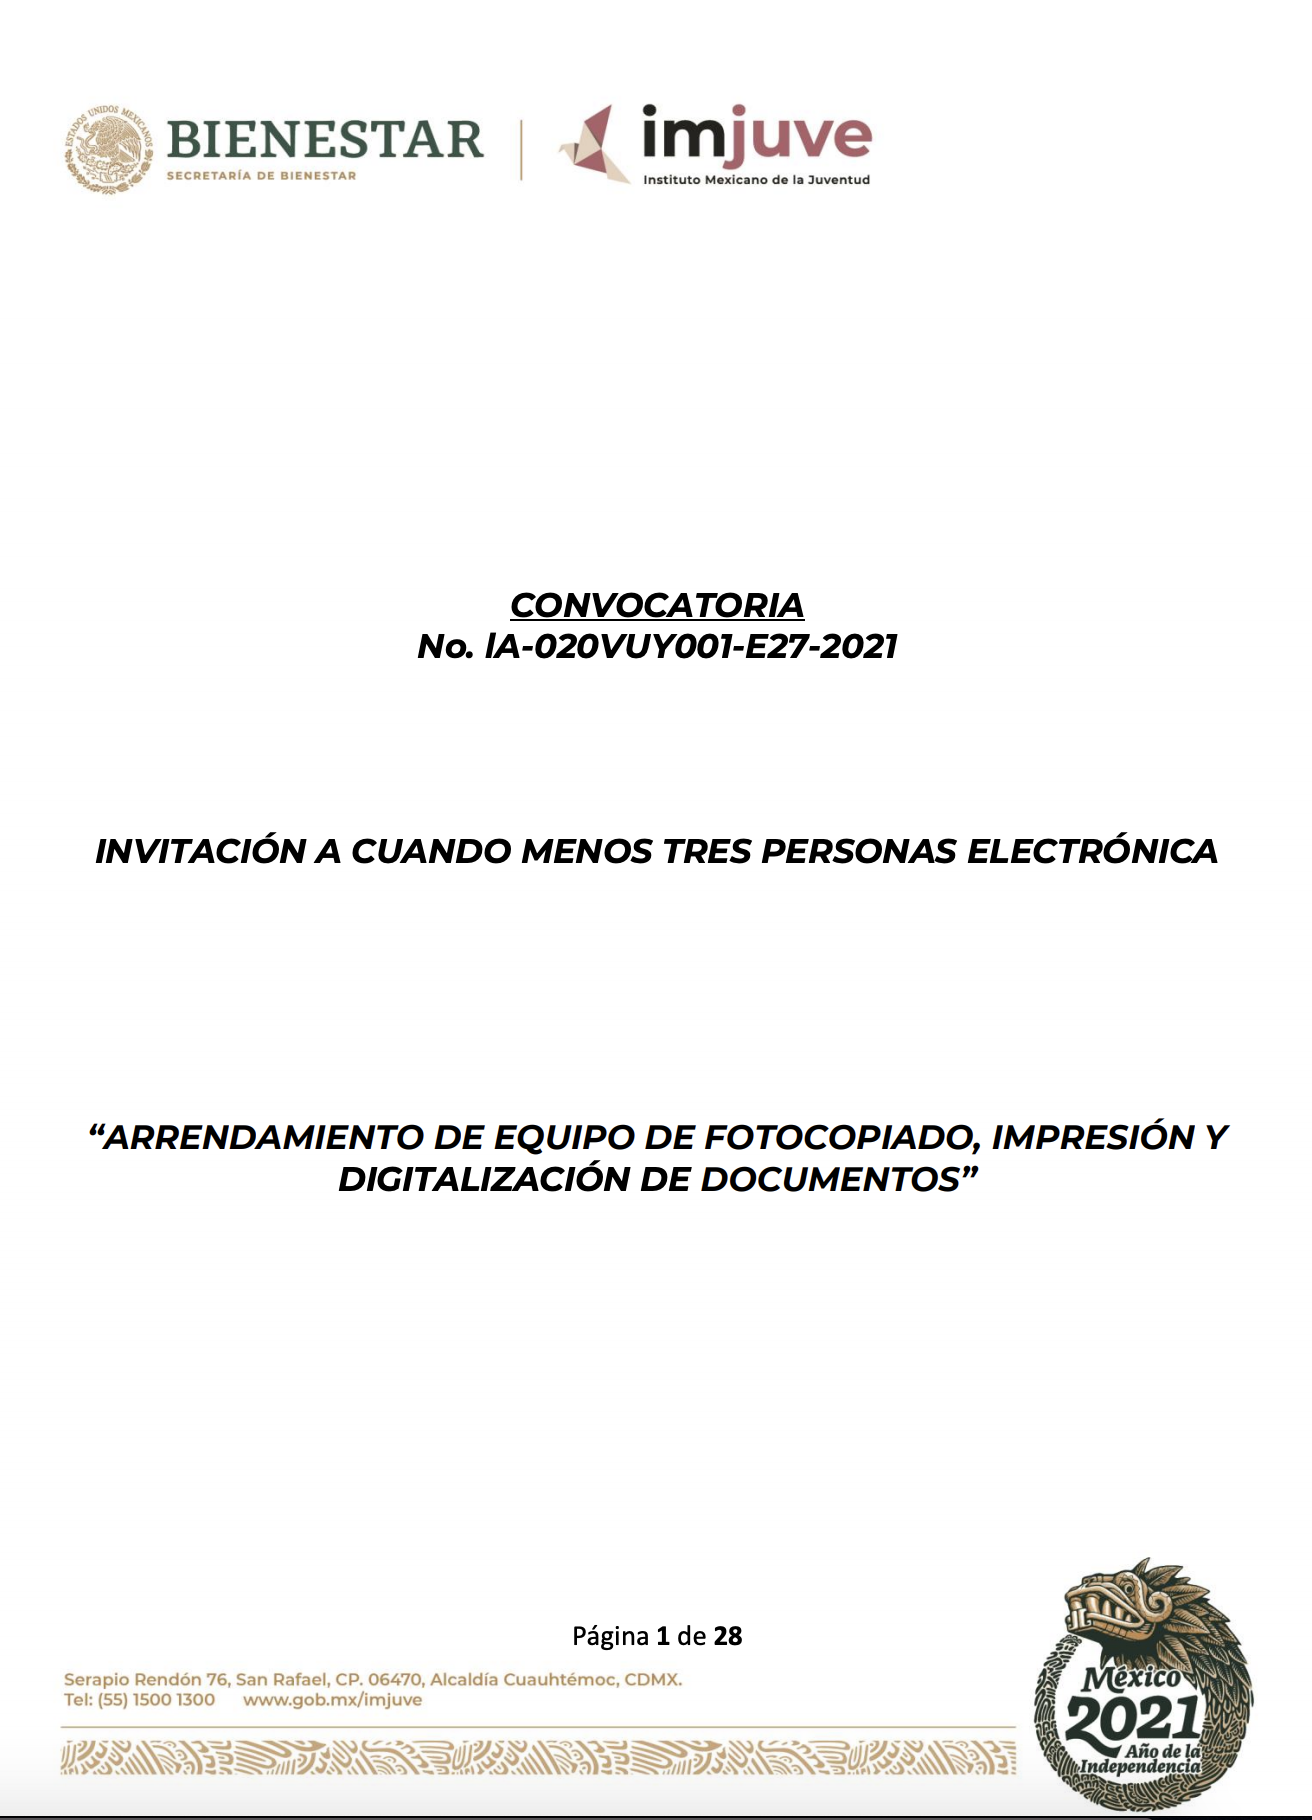 CONVOCATORIA No. lA 020VUY001 E27 2021 ARRENDAMIENTO DE EQUIPO DE FOTOCOPIADO, IMPRESIÓN Y DIGITALIZACIÓN DE DOCUMENTOS